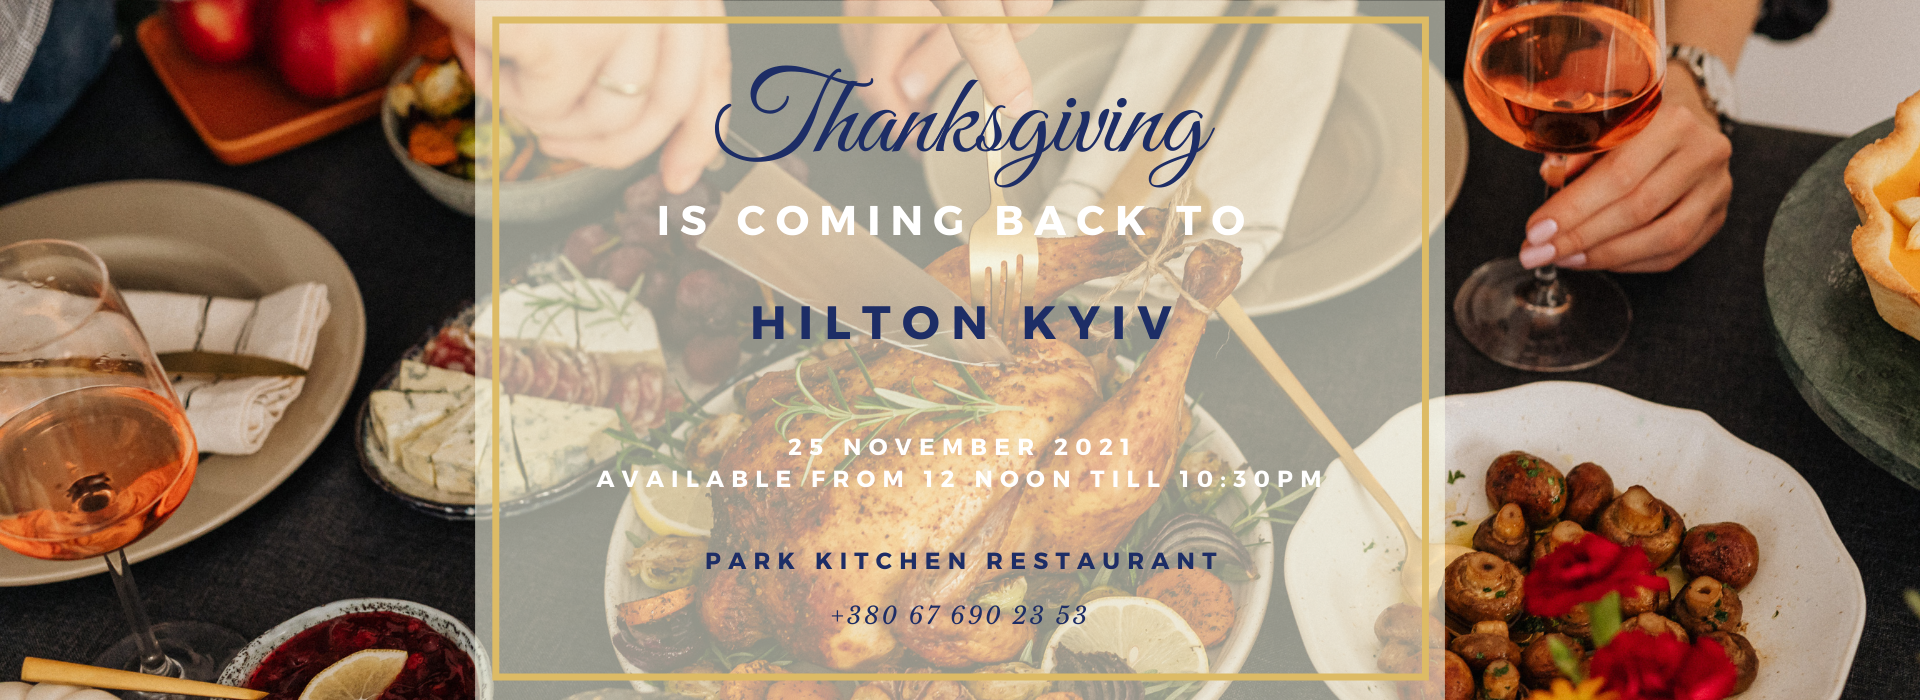 Park Kitchen Restaurant at Hilton Kyiv